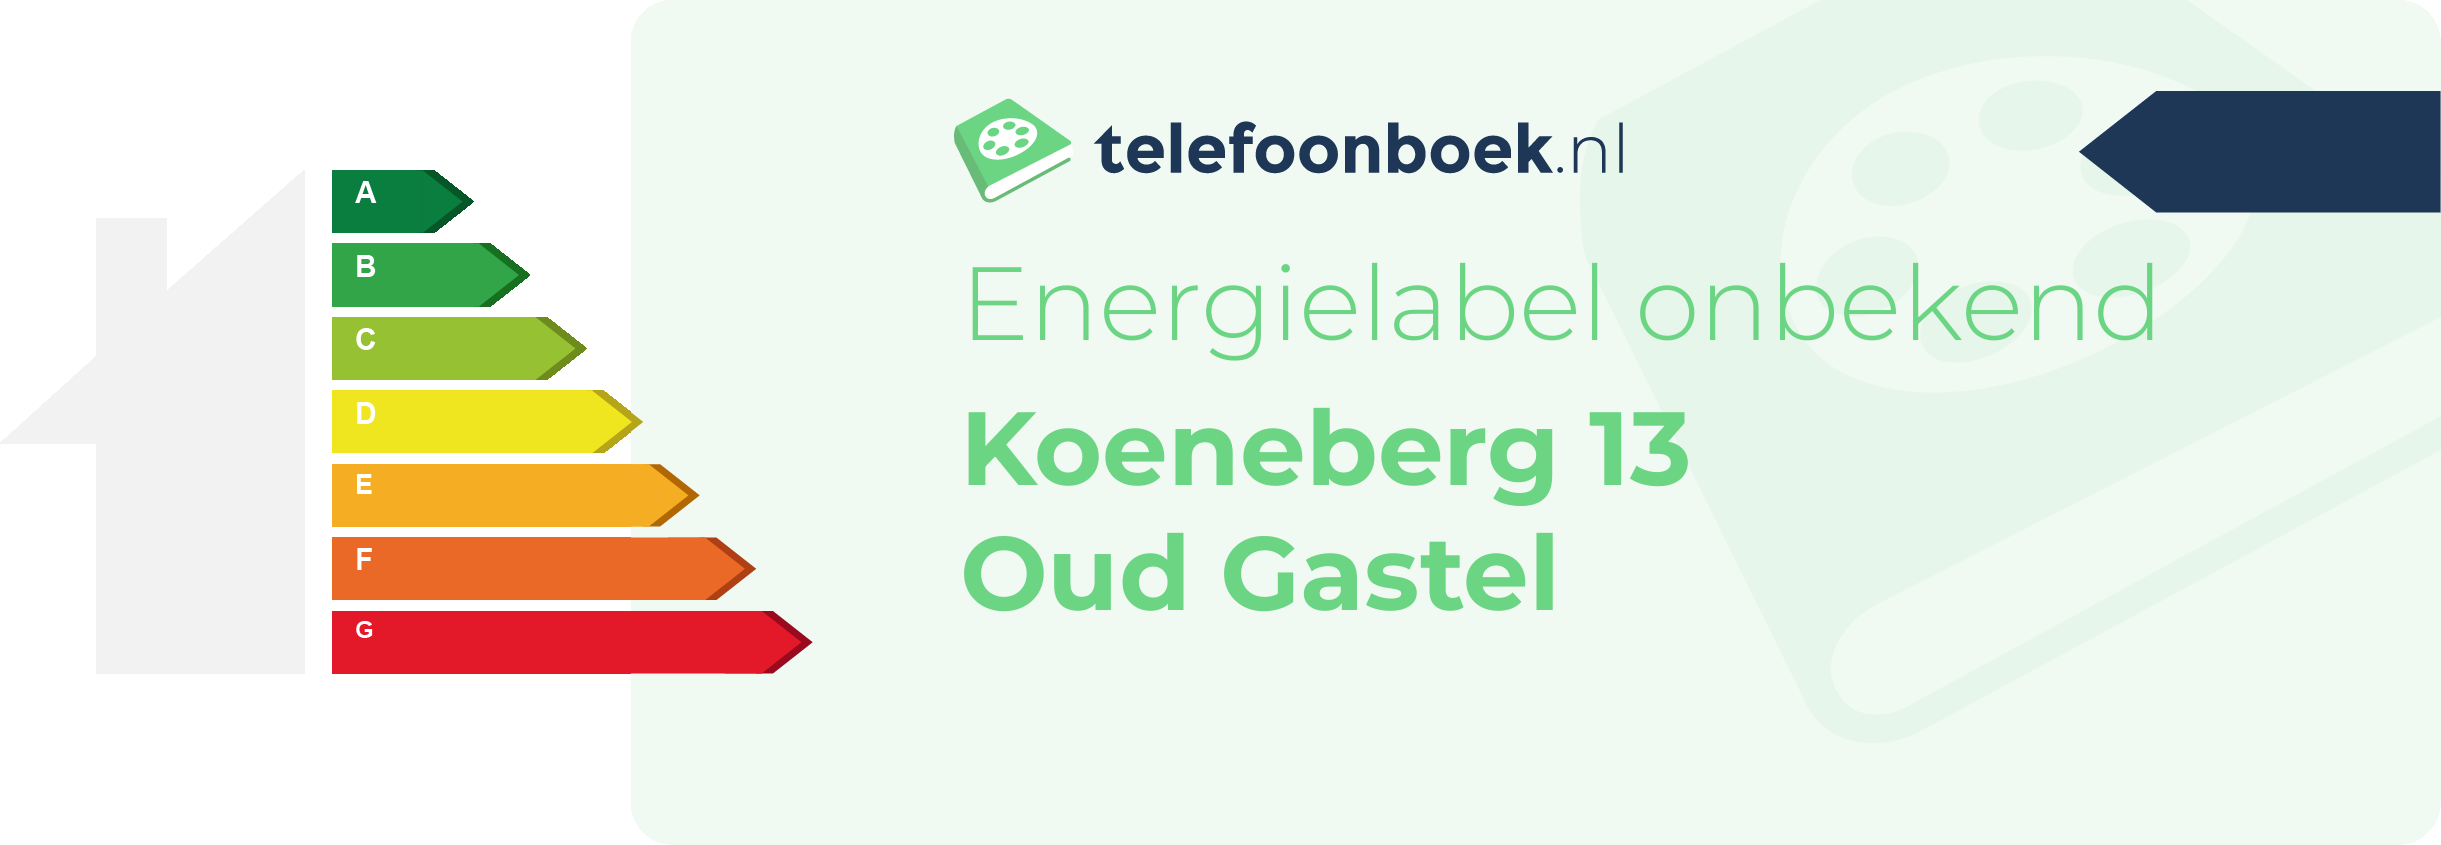 Energielabel Koeneberg 13 Oud Gastel